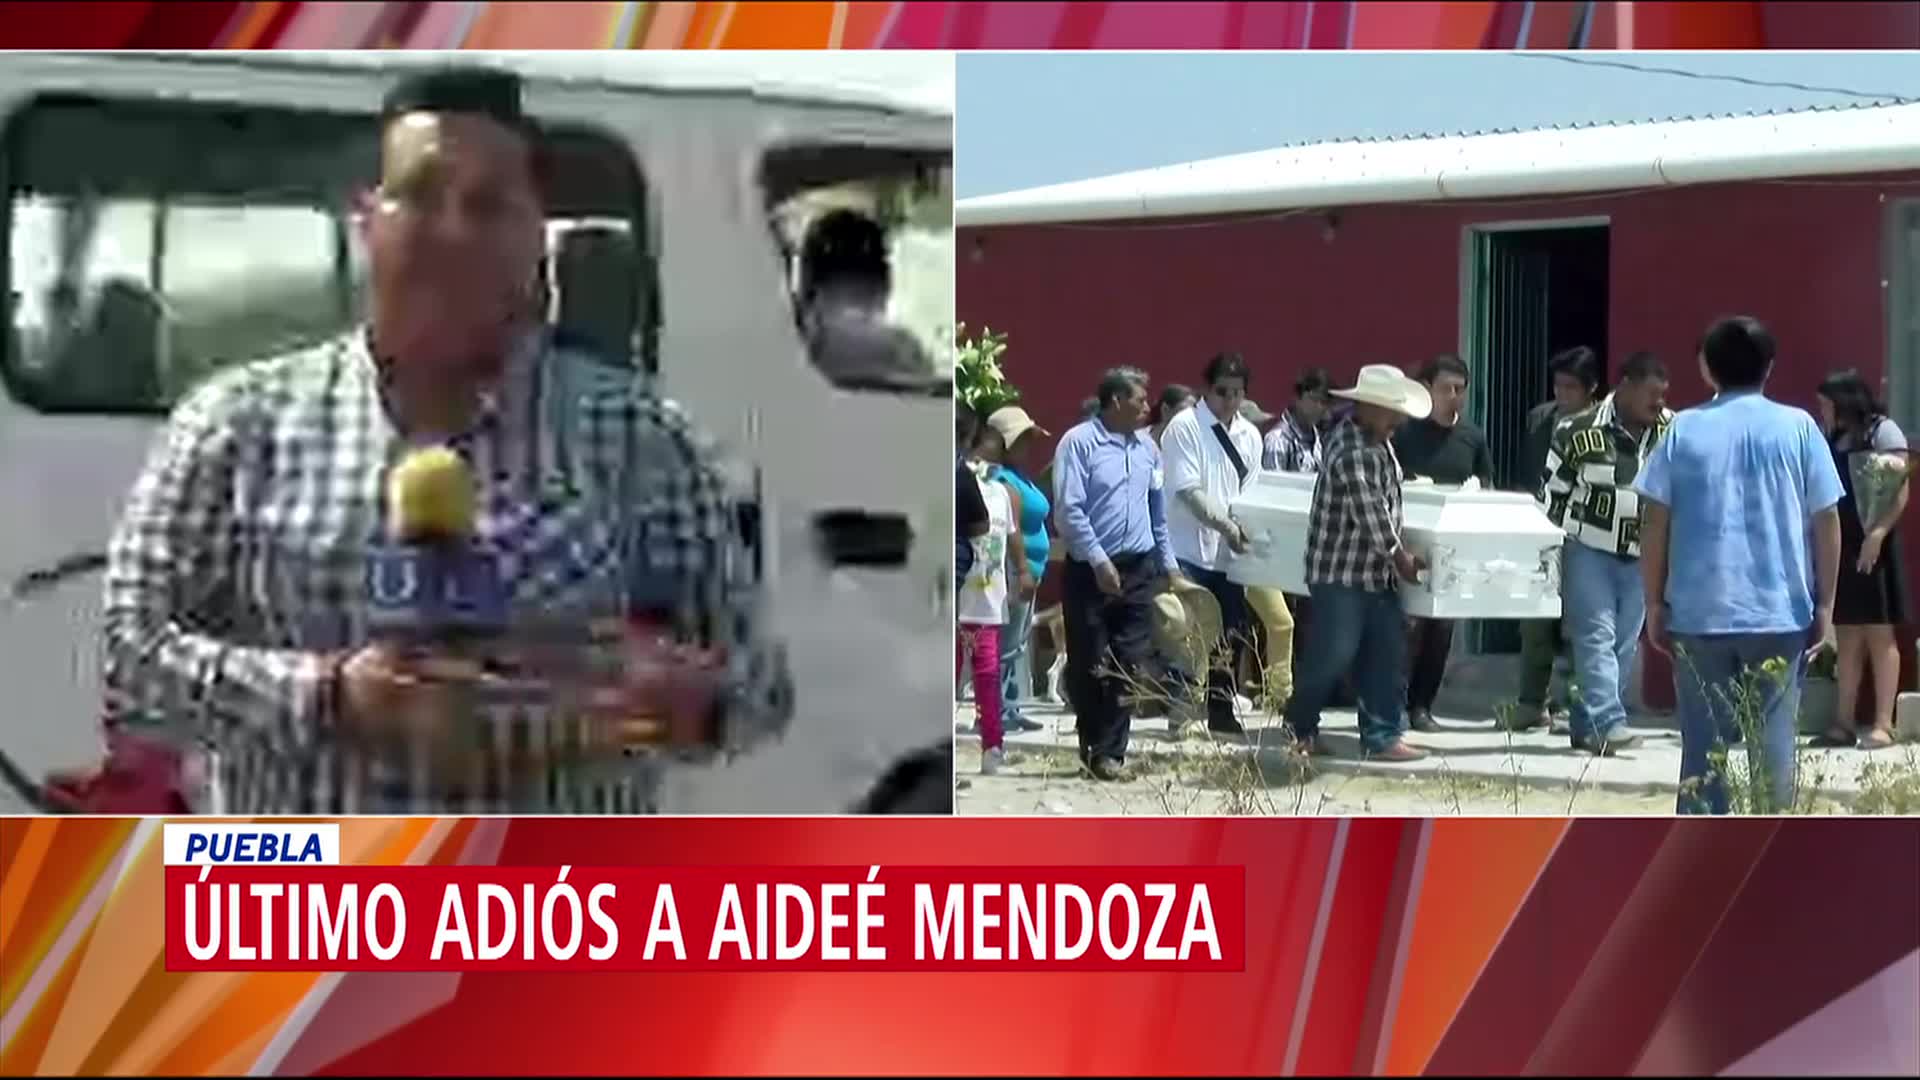 Familiares y amigos dan último adiós a Aideé Mendoza en Puebla